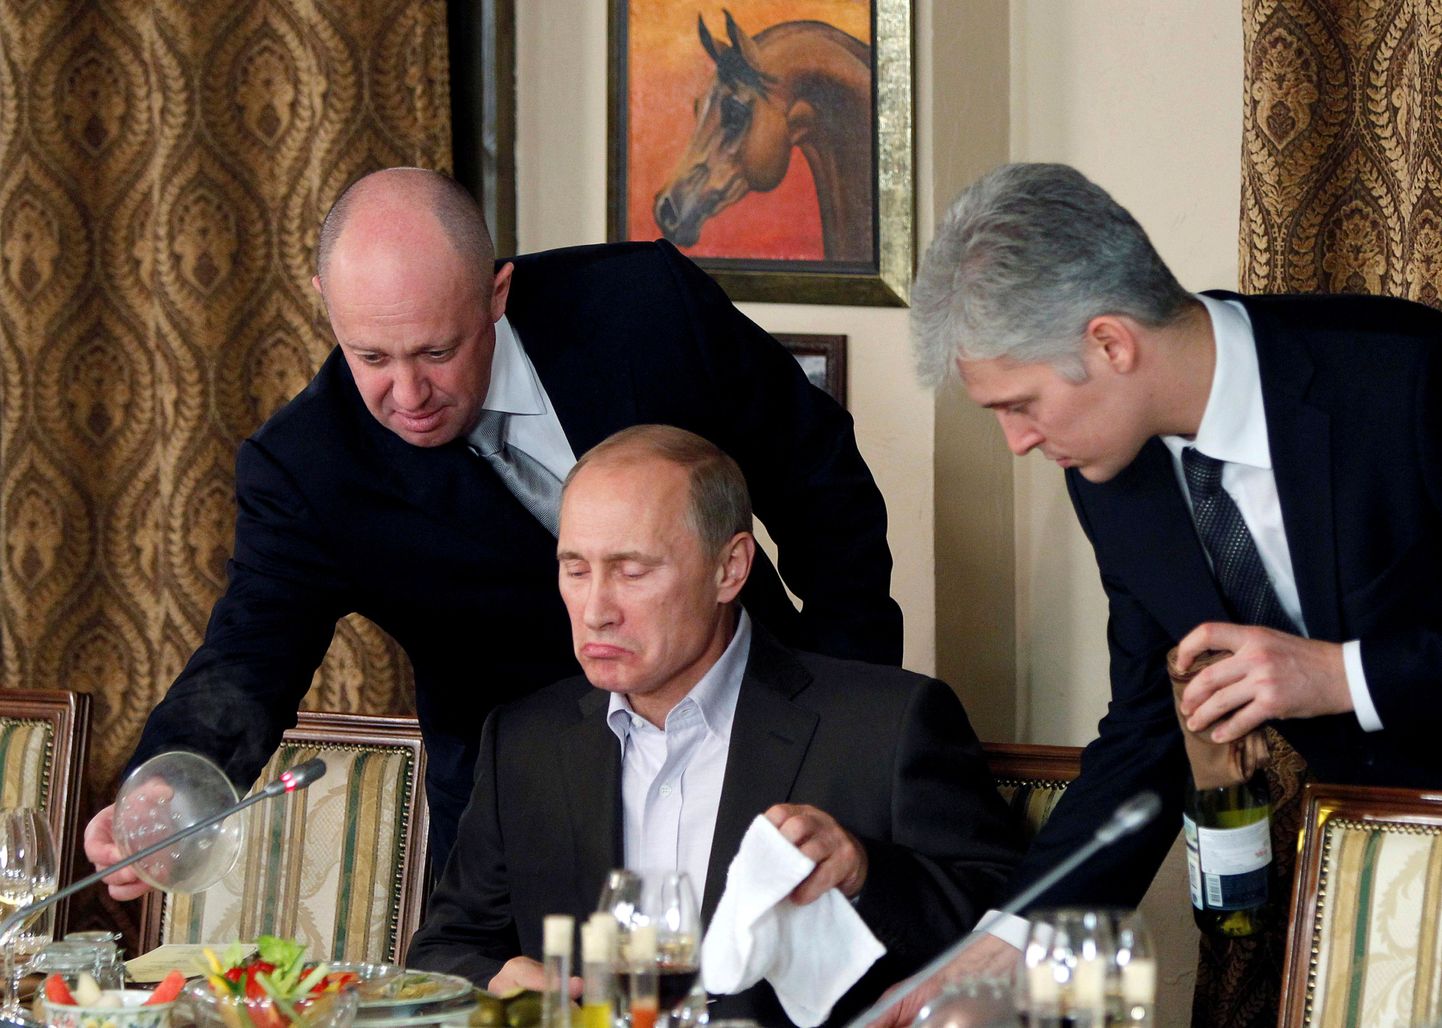 Venemaa toitlustus-ja restoraniärimees Jevgeni Prigožin (vasakul) teenindamas talle kuuluvas restoranis Cheval Blanc Venemaa presidenti Vladimir Putinit